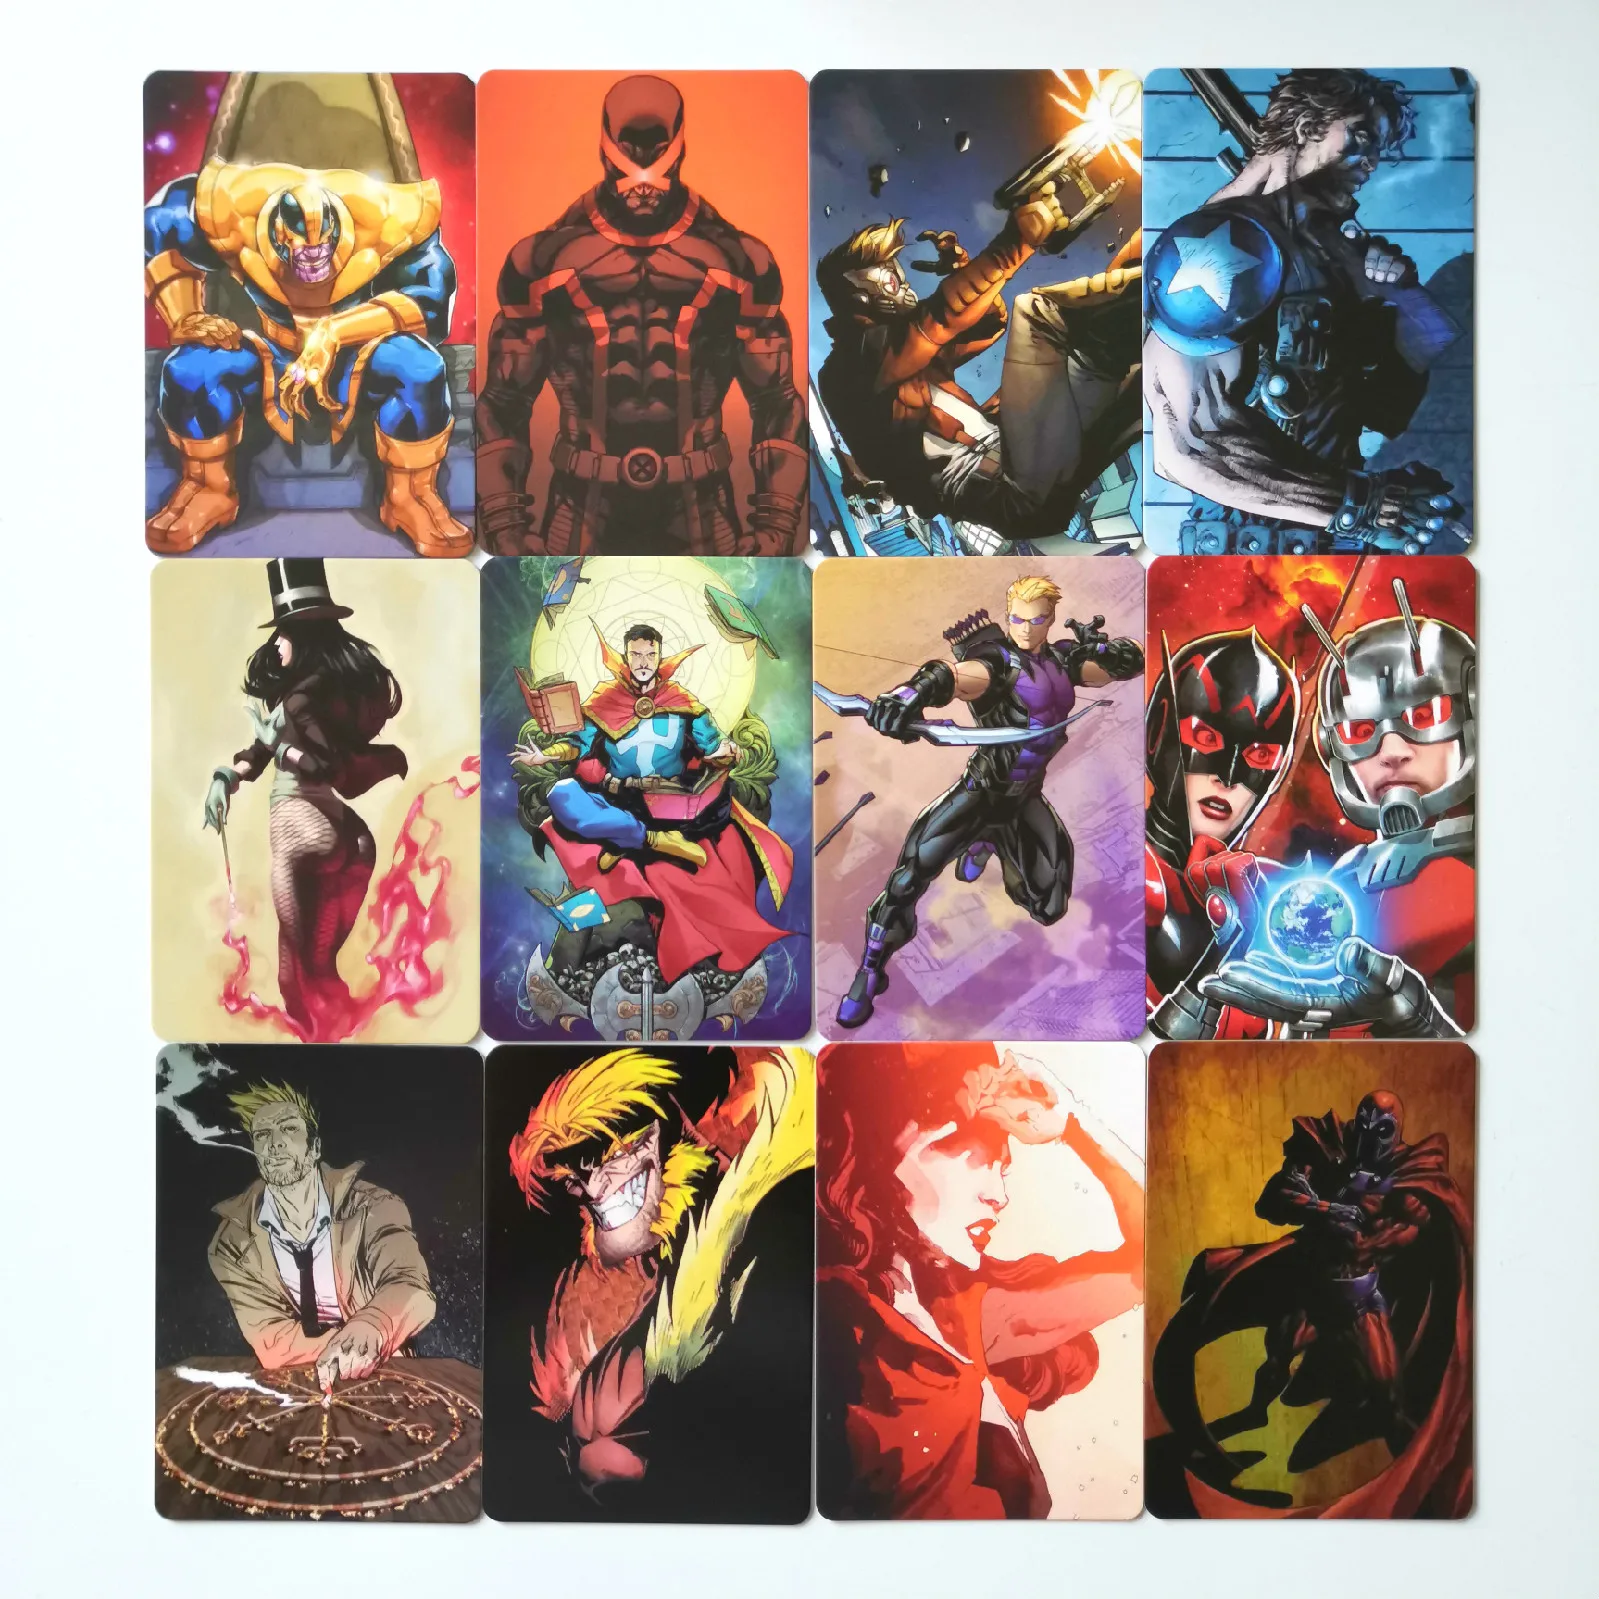 26 шт./компл. Супермен Человек-паук Marvel DC супер игрушки в виде героев Хобби Коллекционные игры Коллекция аниме-открытки